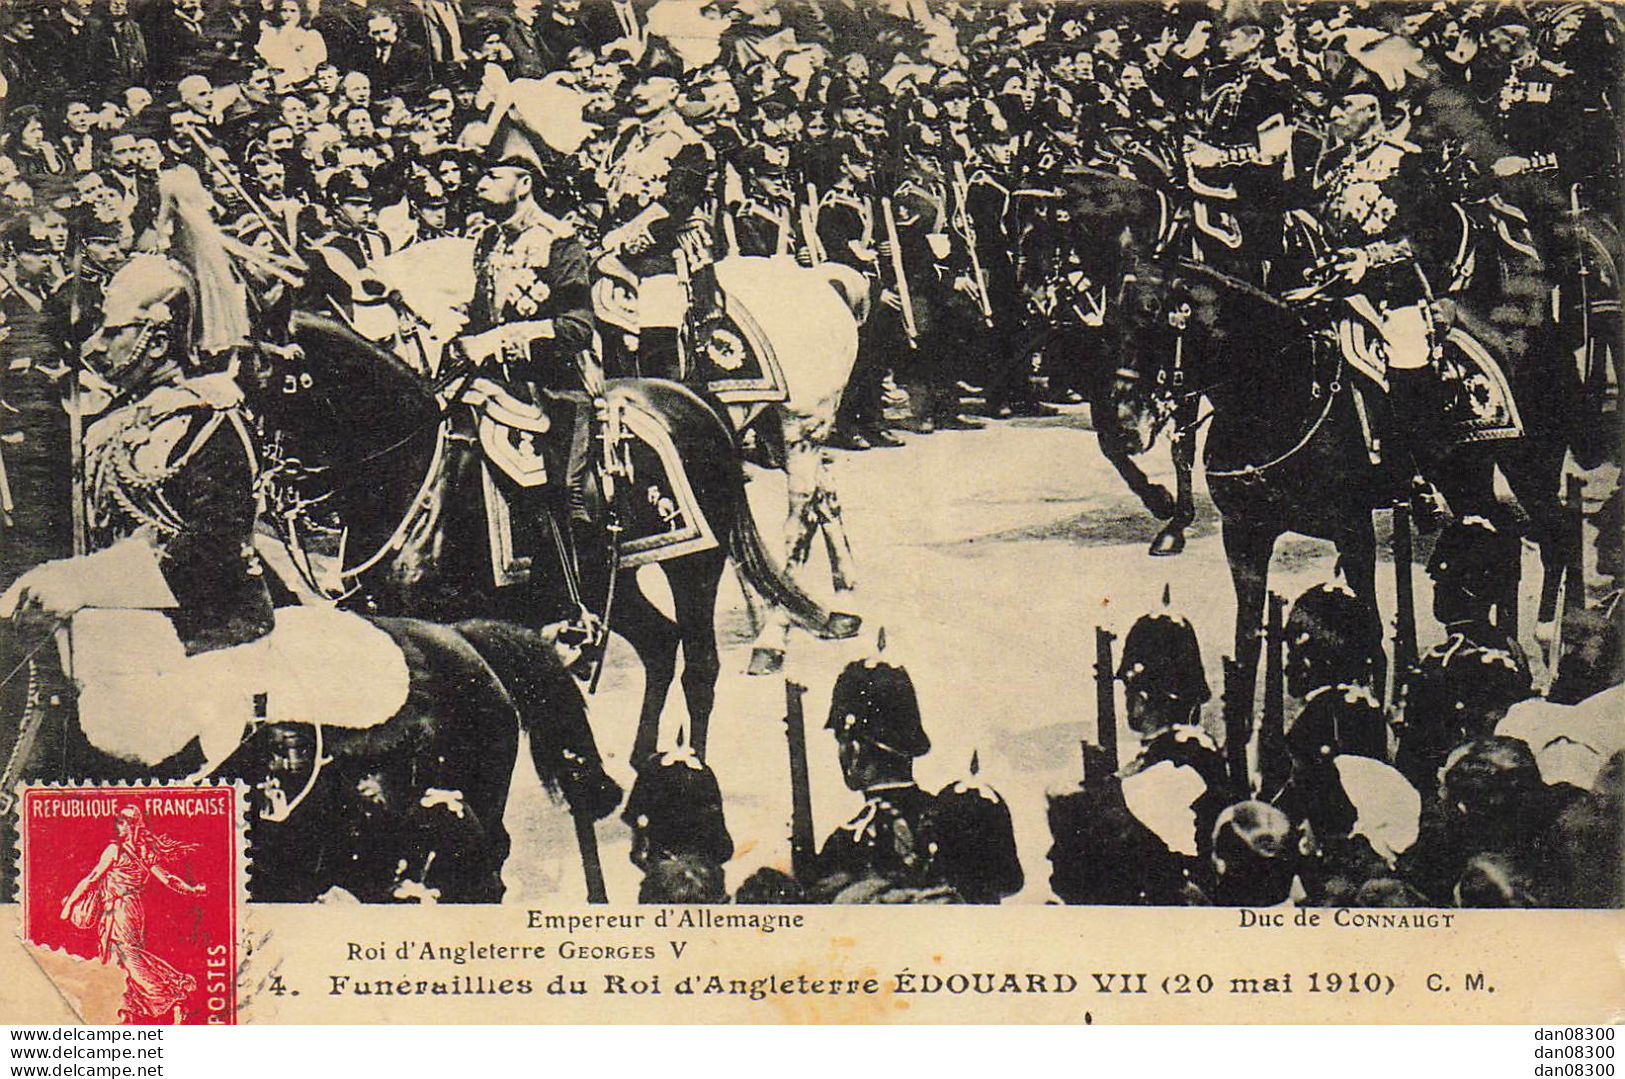 FUNERAILLES DU ROI D'ANGLETERRE EDOUARD VII 20 MAI 1910 EMPEREUR D'ALLEMAGNE ROI D"ANGLETERRE GEORGES V DUC DE CONNAUGT - Funerales